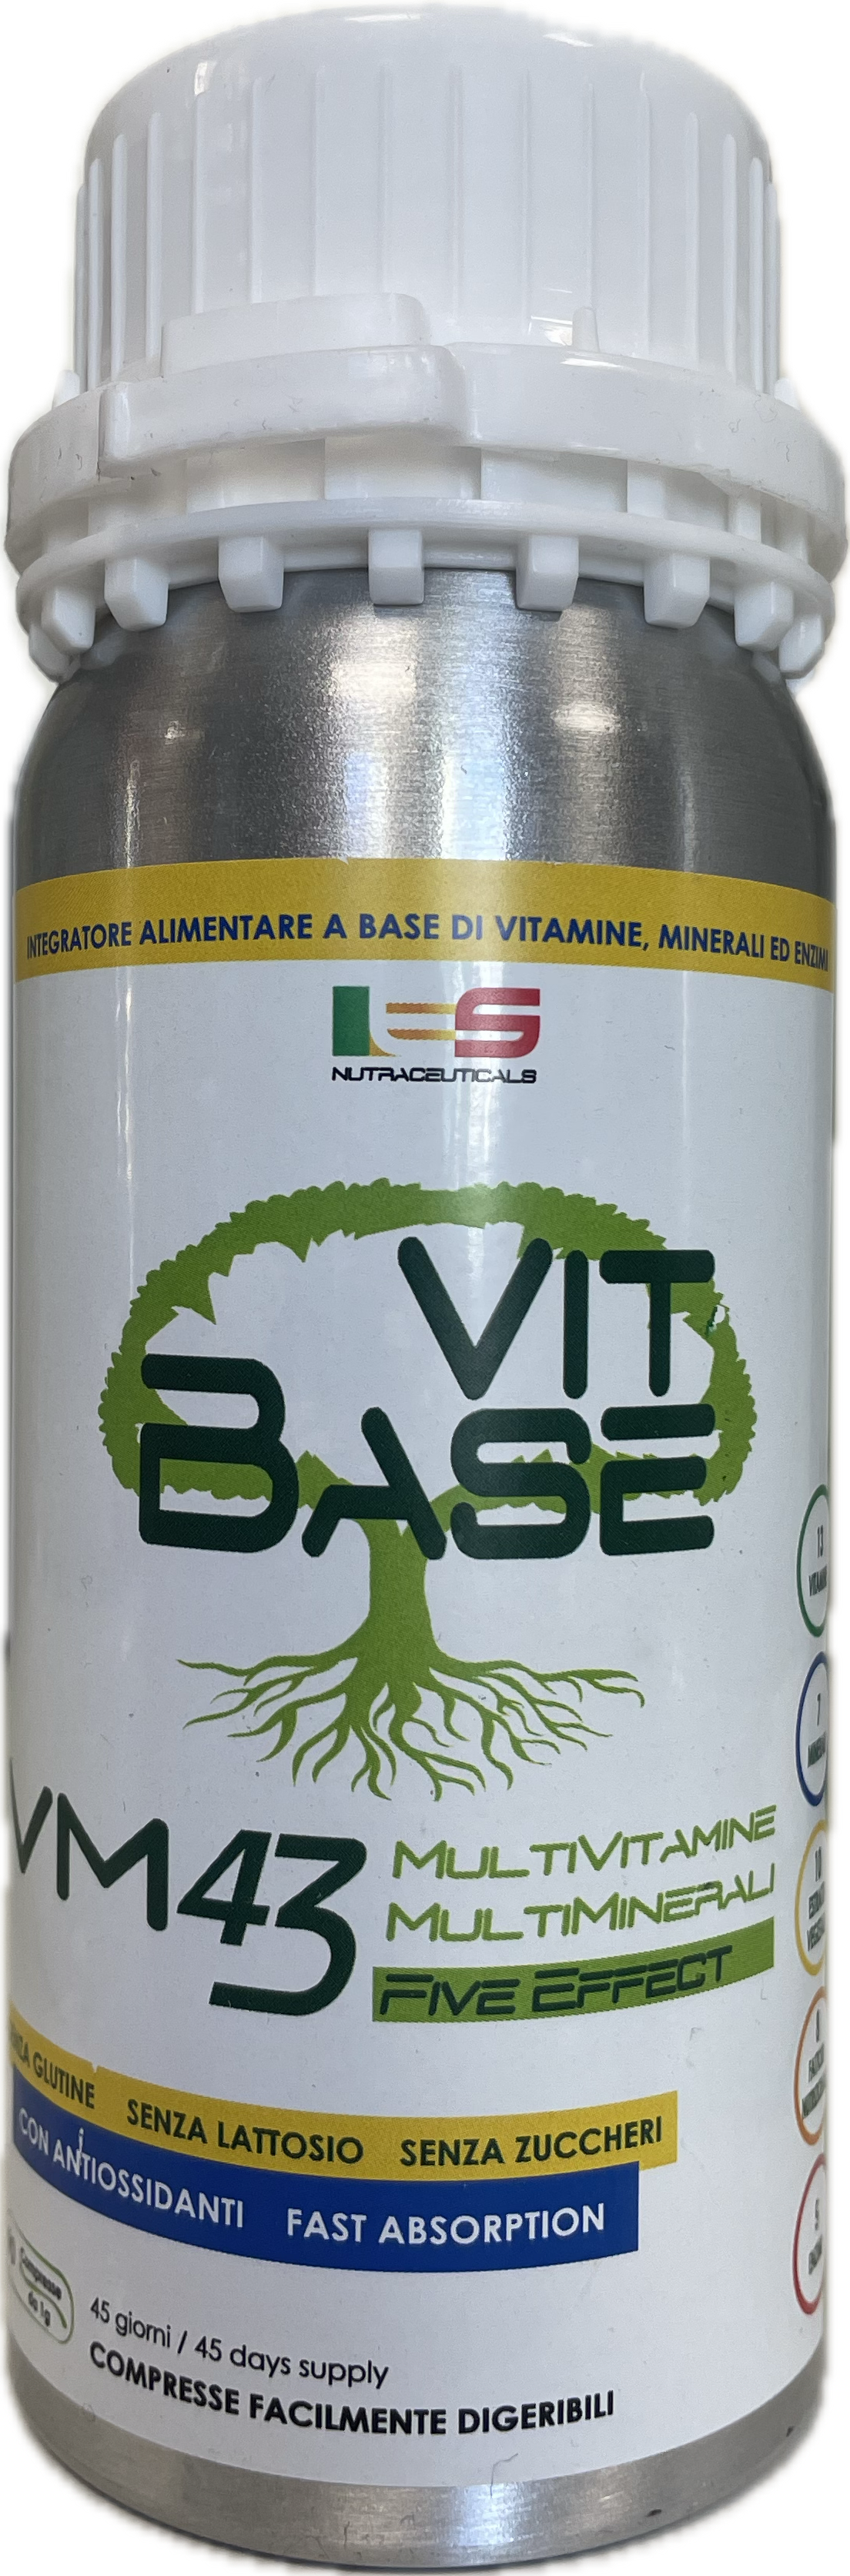 Multivitaminico - Multiminerali - Vit Base (ES nutraceutica)